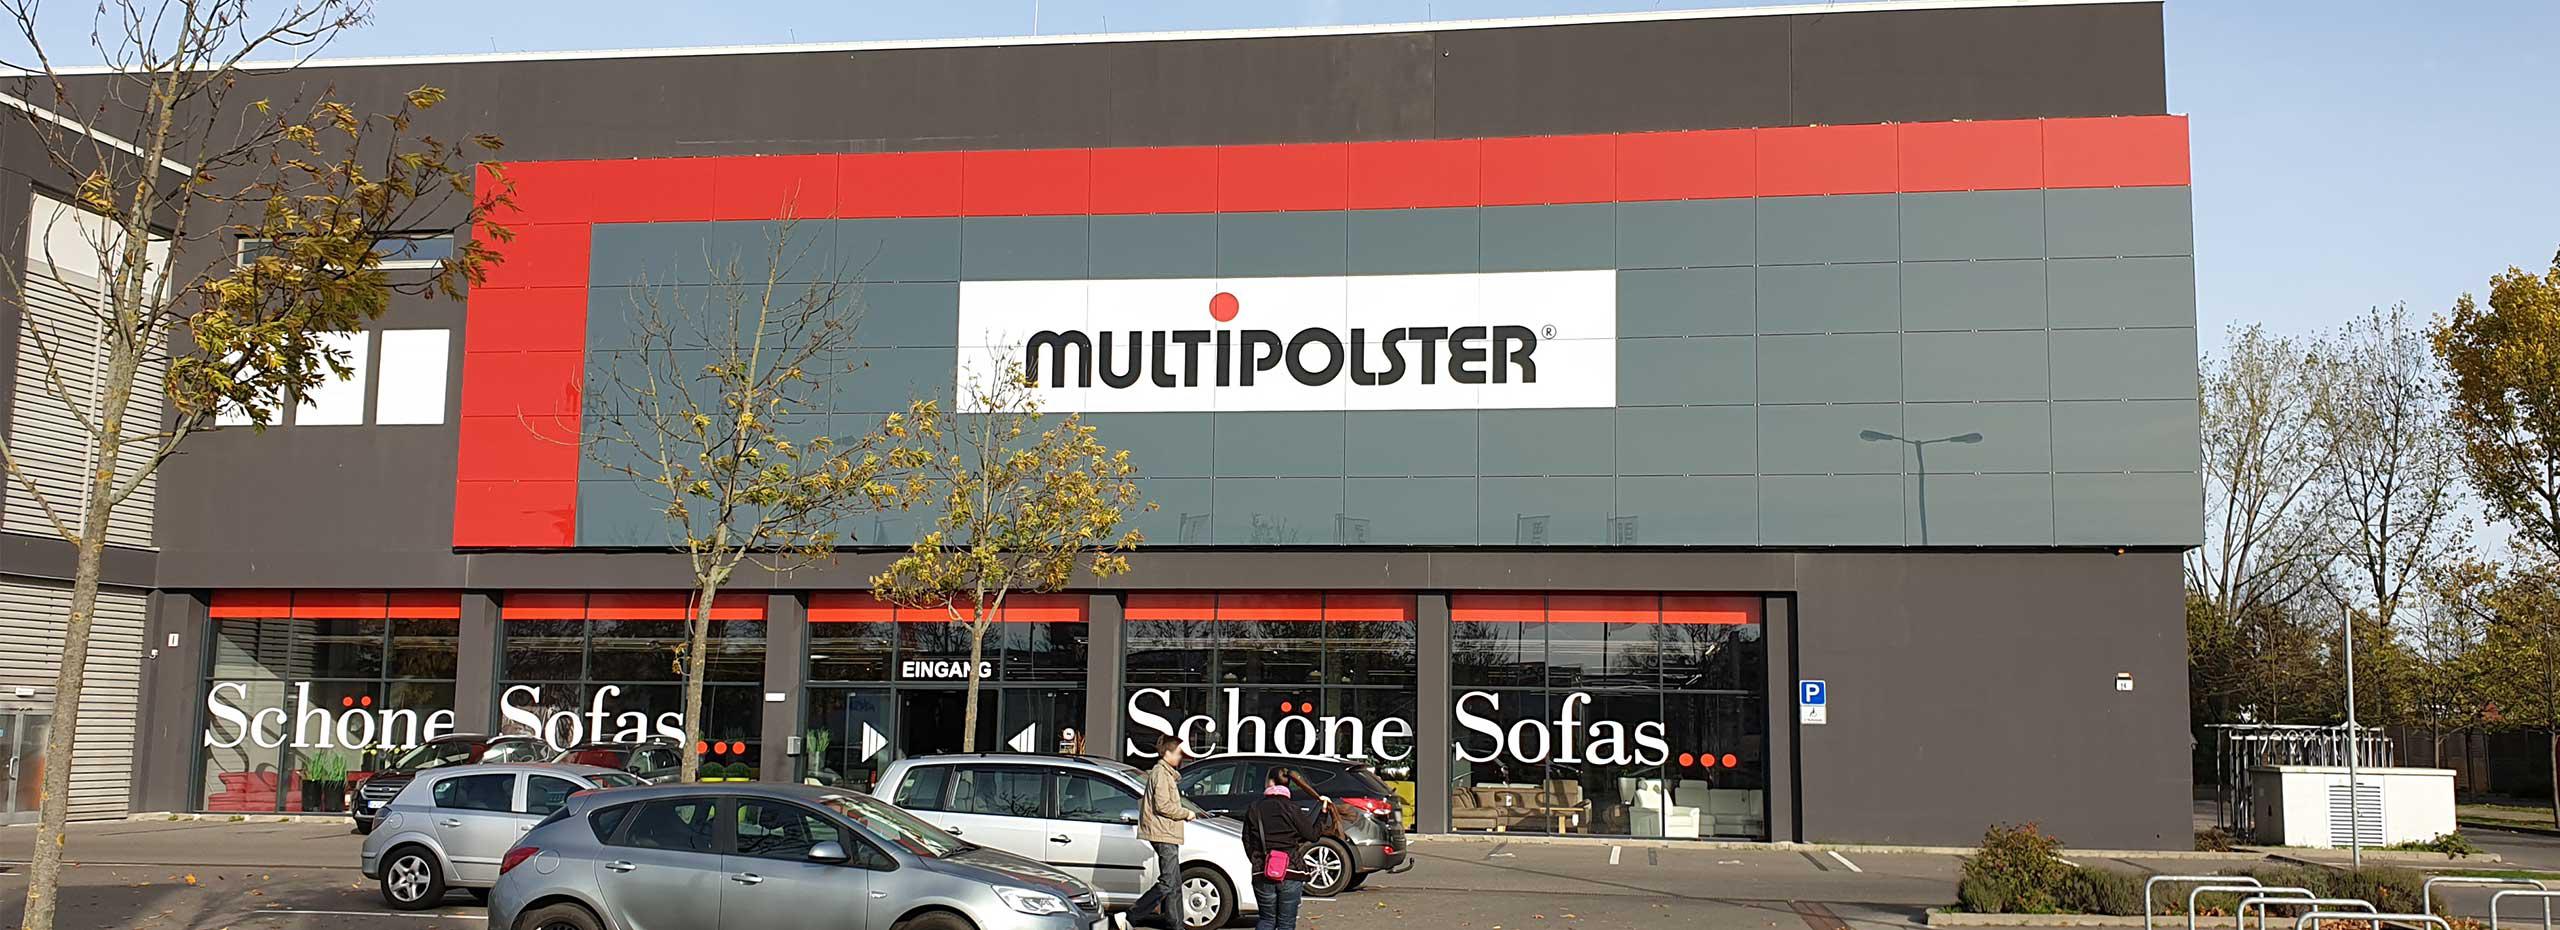 Kundenbild groß 1 Multipolster -  Berlin Alt-Mahlsdorf (NEBEN ROLLER BZW. RAHAUS)